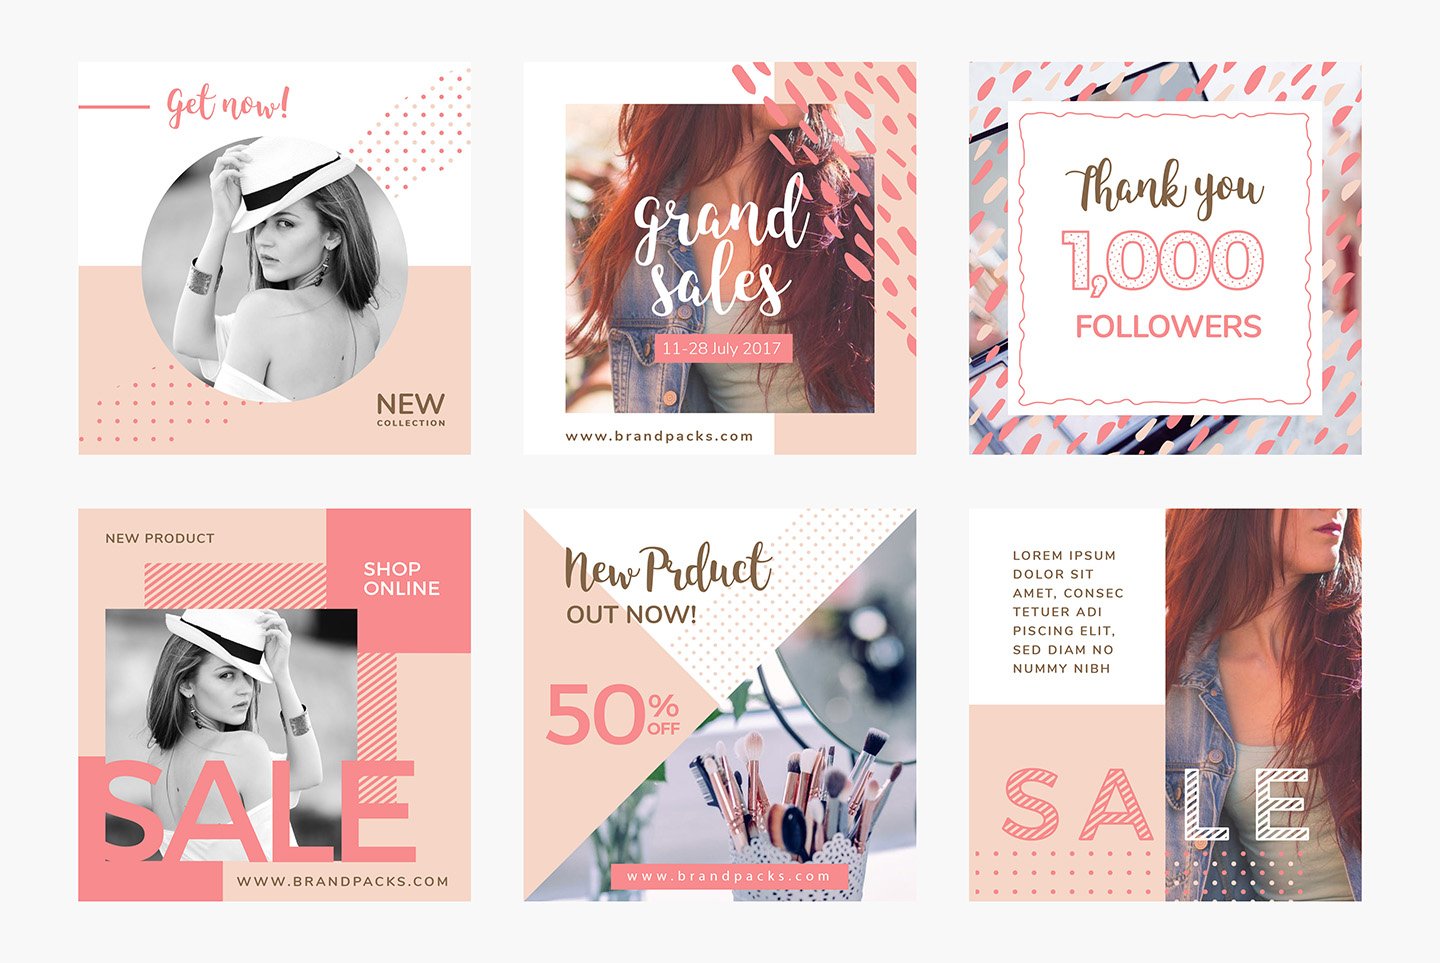 粉色系女性化妆品服装电商营销海报Instagram模板 Social Media Templates Pack Vol.5插图1